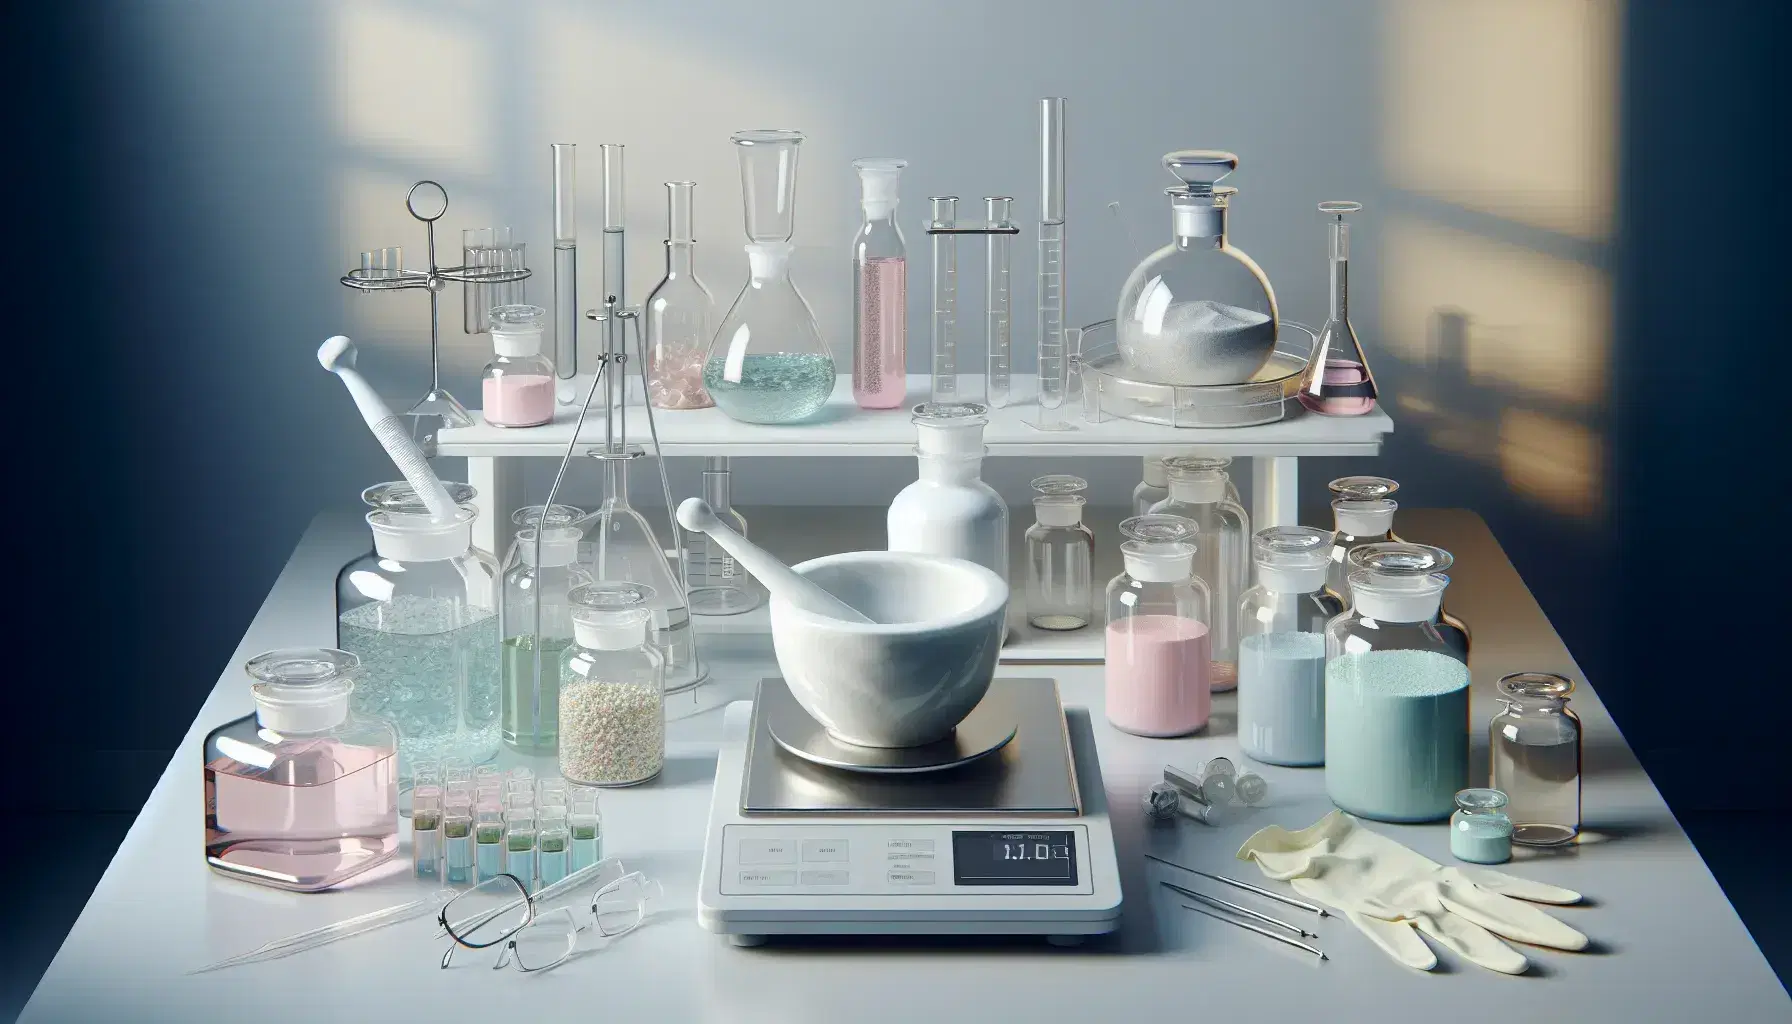 Laboratorio de investigación cosmética con frascos de líquidos pastel, mortero de porcelana, pipetas, guantes, gafas de seguridad y balanza analítica.